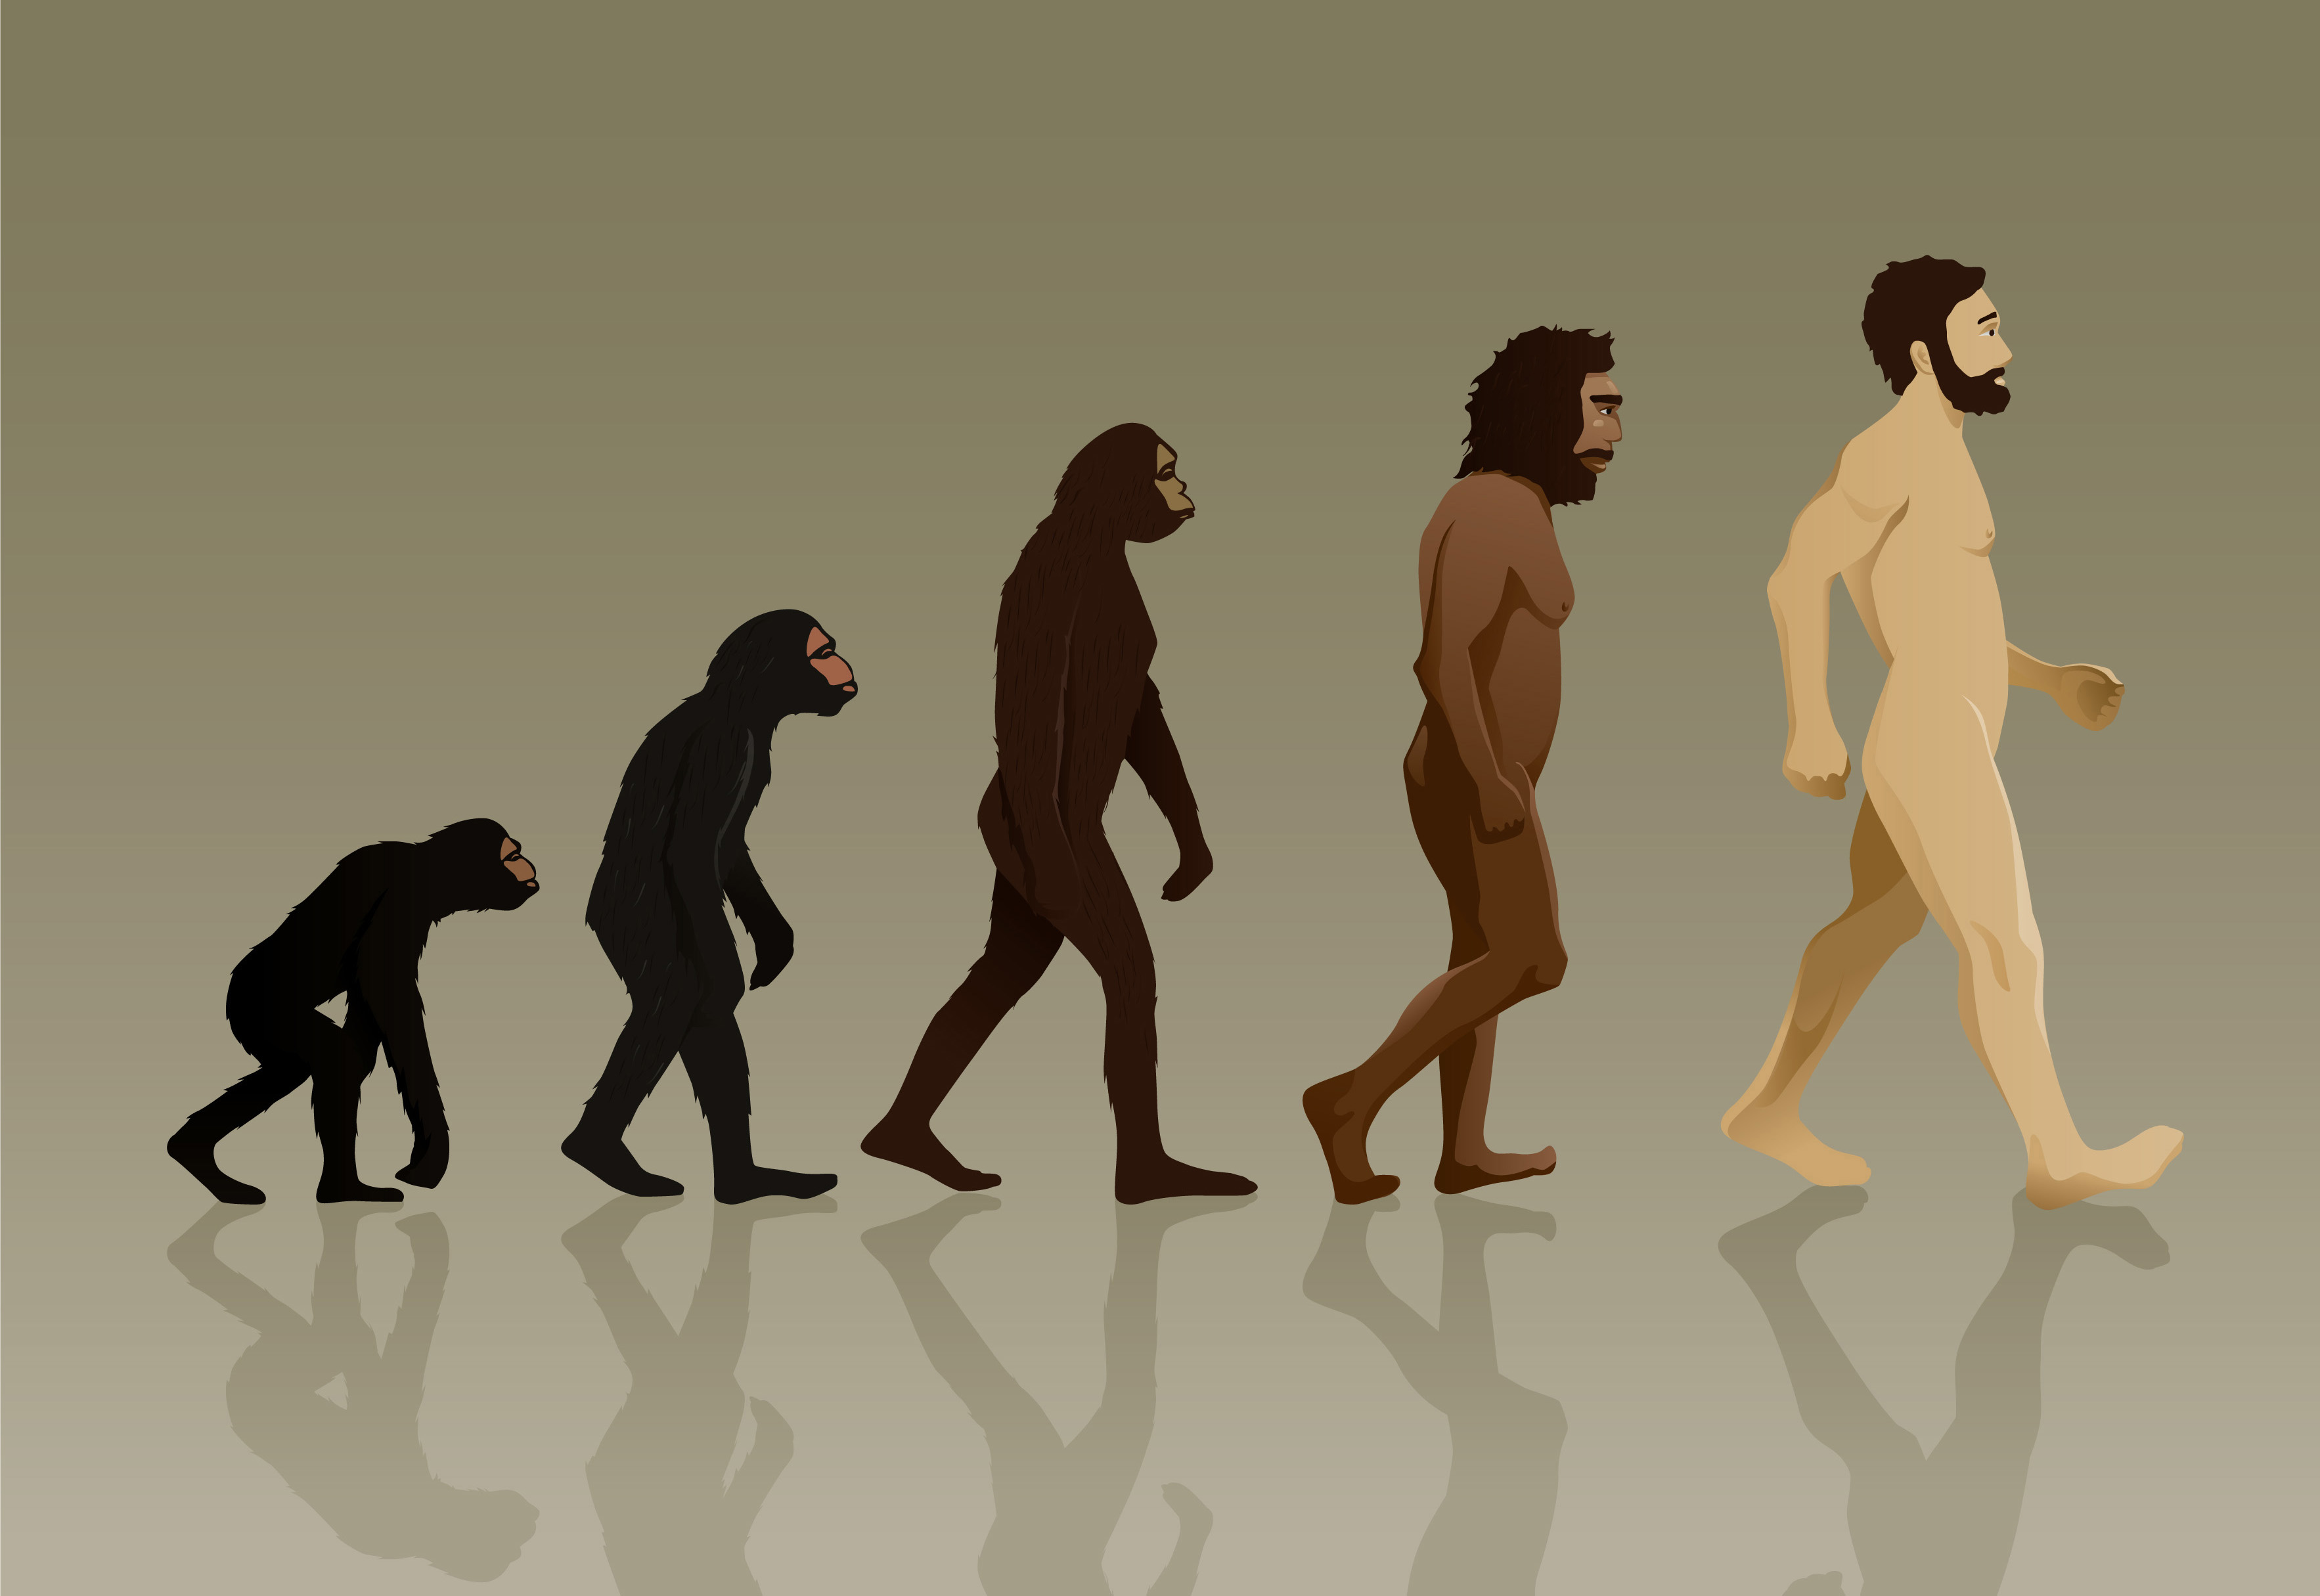 Человек превращается в ребенка. Эволюция Дарвин хомо. Ступени эволюции человека по Дарвину. Хомо сапиенс обезьяна. Эволюция обезьяны в человека.